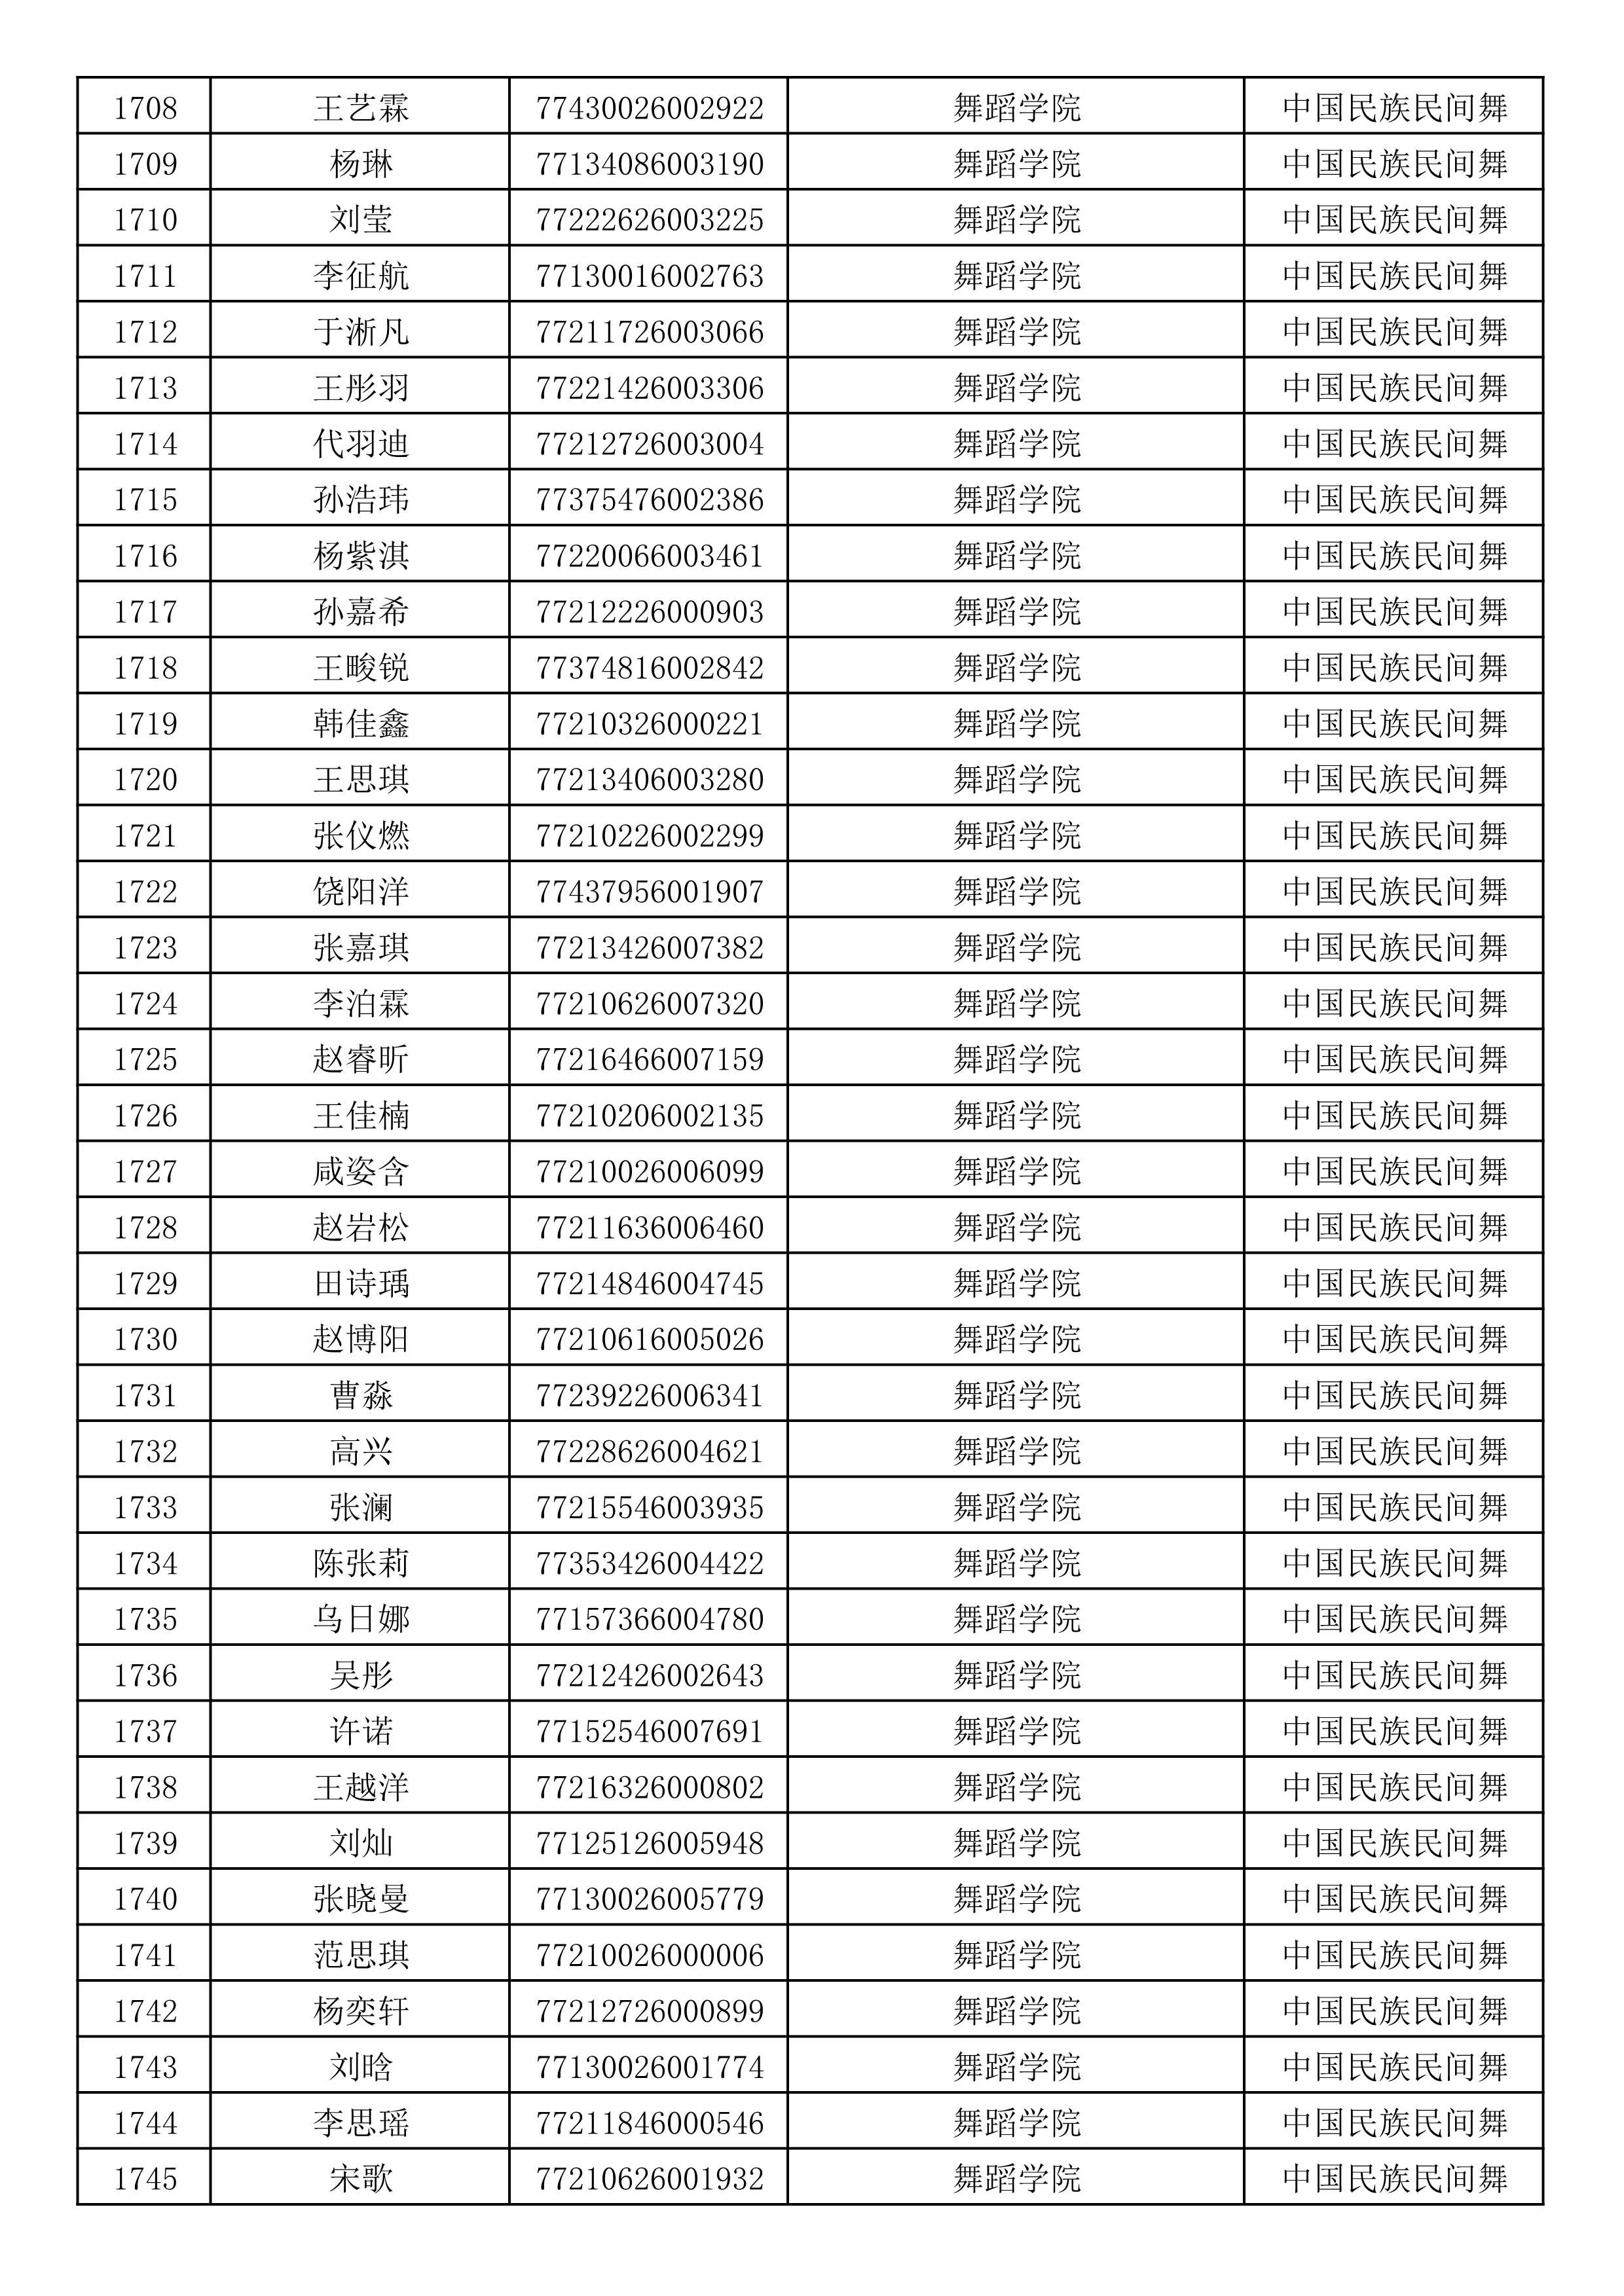 沈阳音乐学院2019年本科招生考试初试合格名单_46.jpg